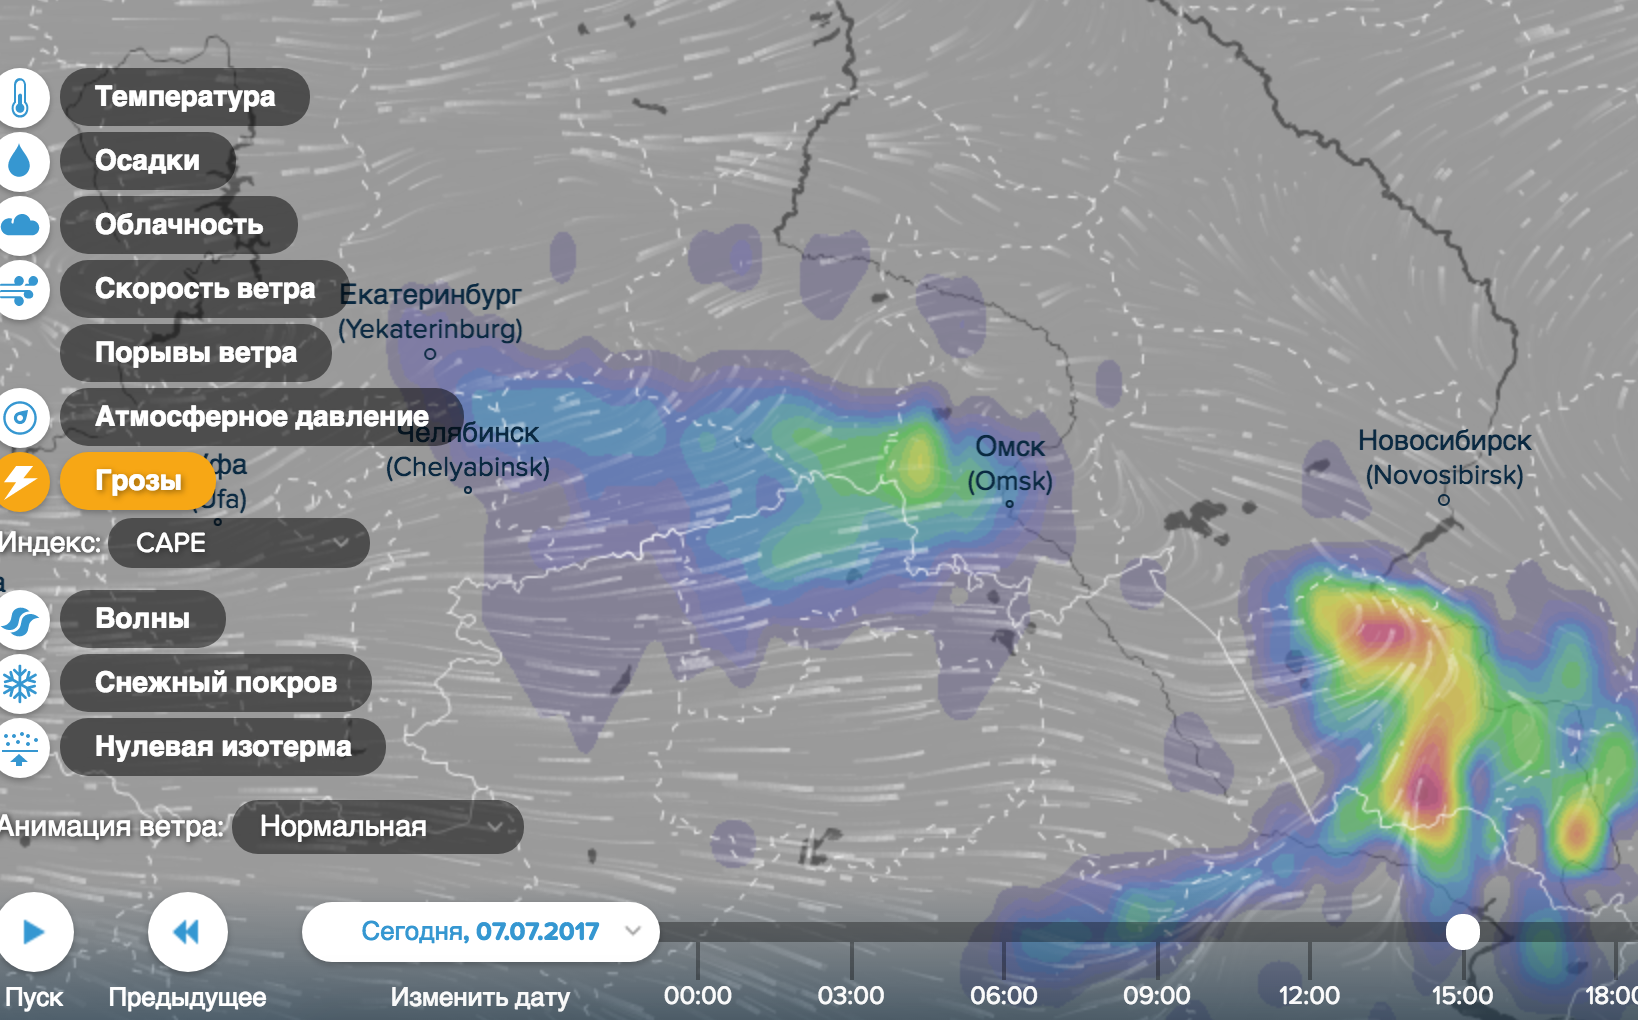 Погода карта осадок. Осадки Омск. Метеорологических осадков. Грозовой фронт на карте в реальном времени. Карта дождя Омск.